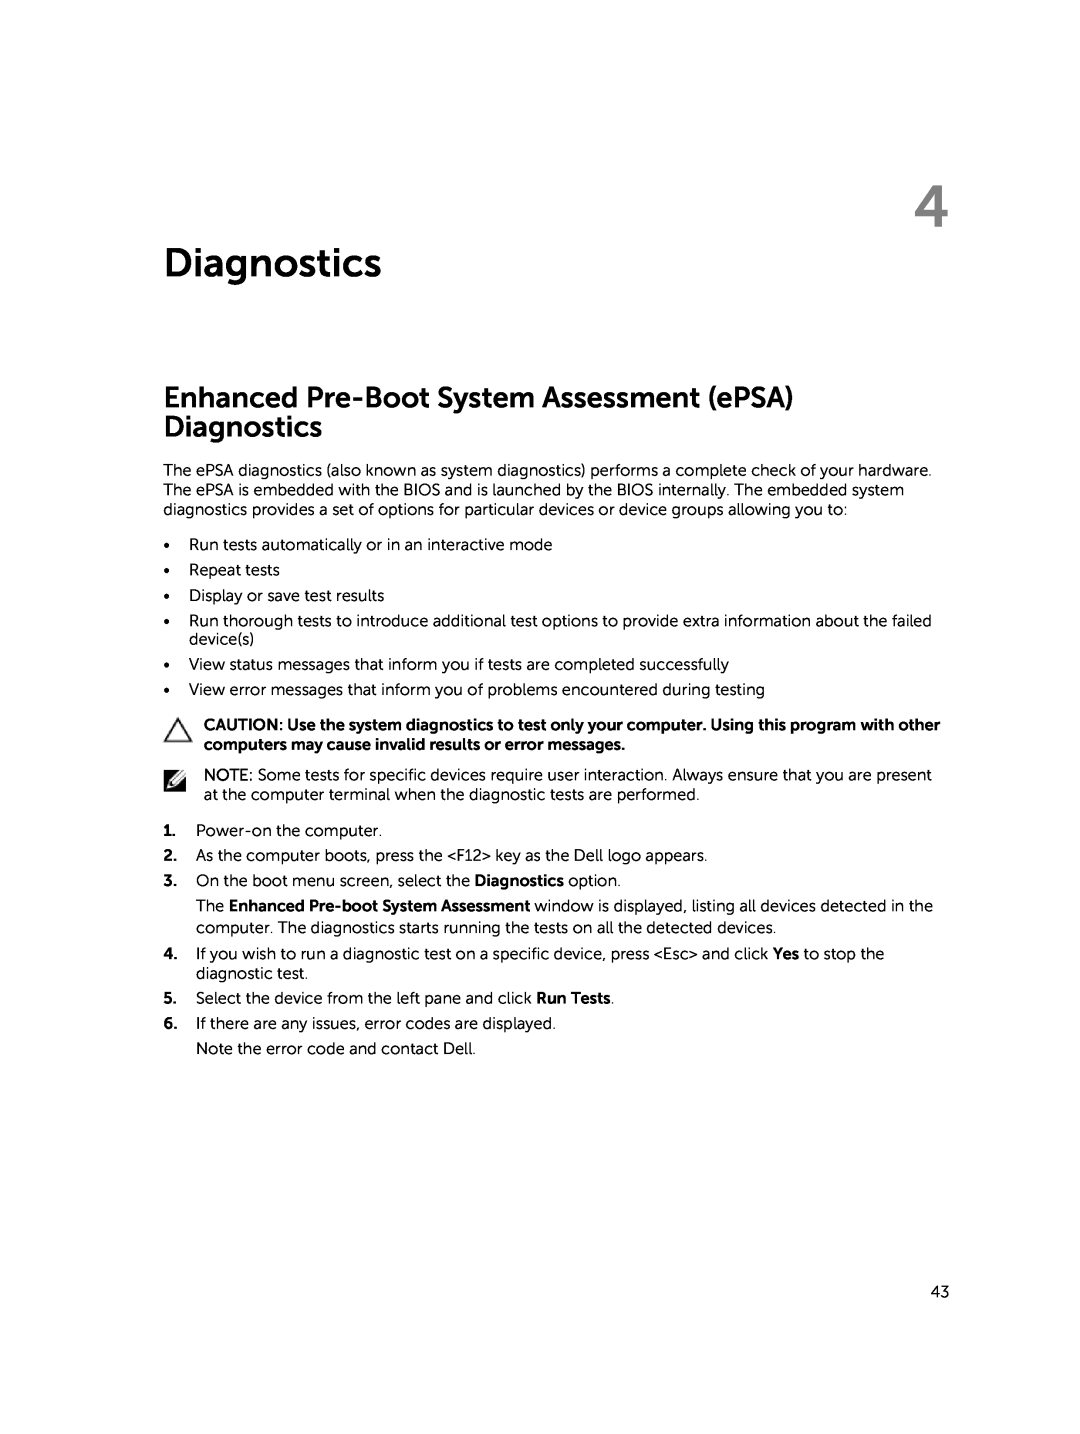 Dell P45F001 owner manual Enhanced Pre-Boot System Assessment ePSA Diagnostics 